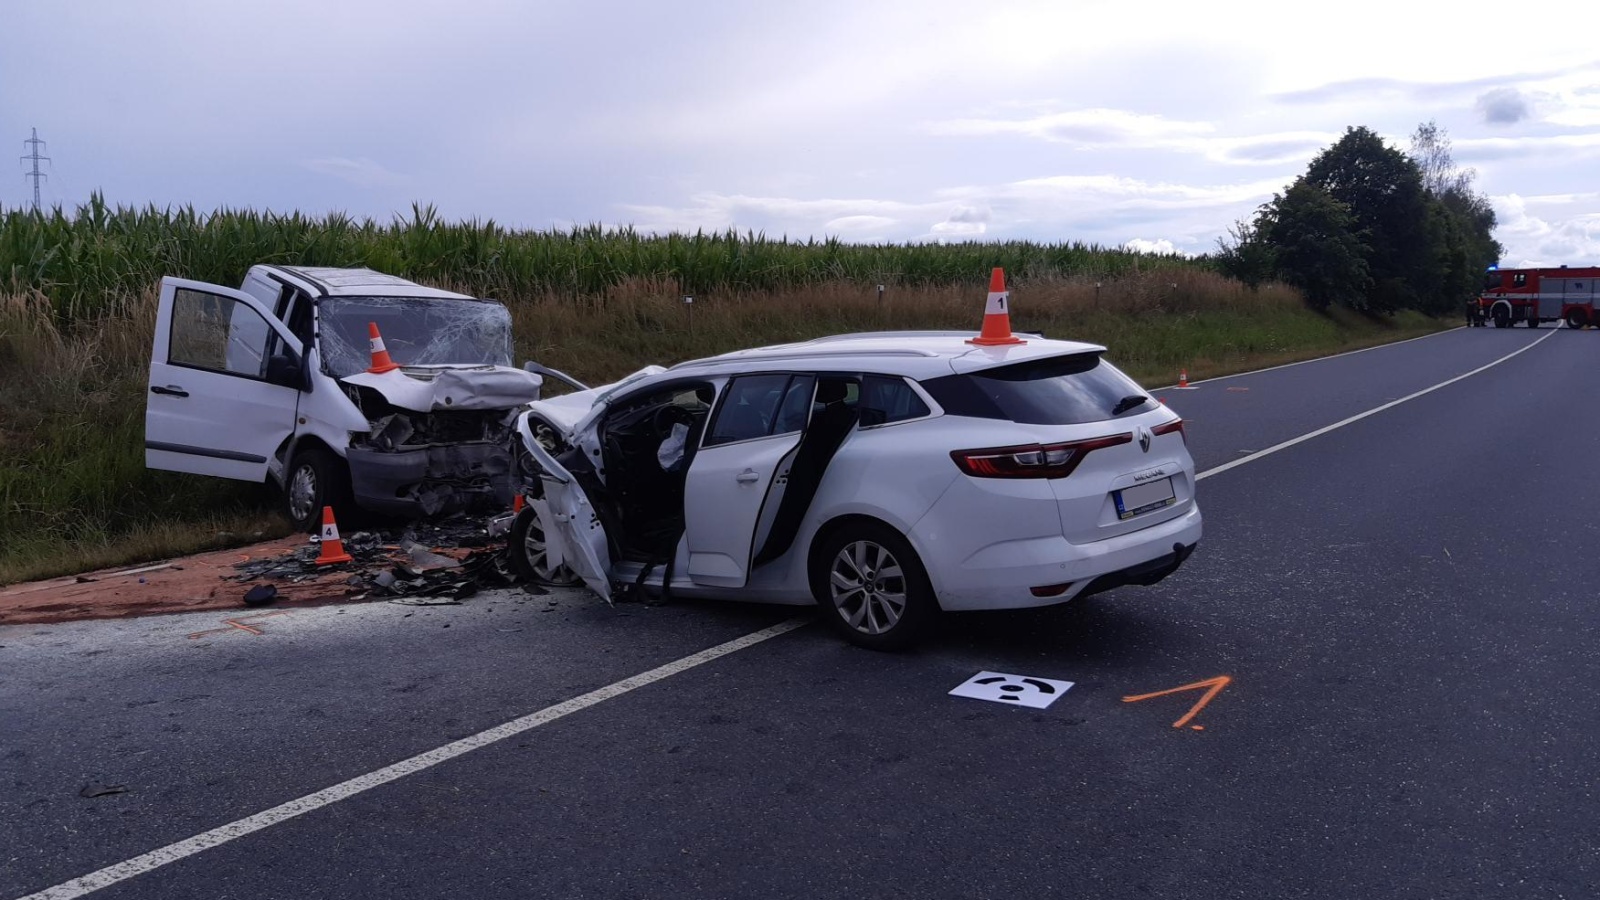 013-Tragická nehoda dvou vozidel poblíž Kácova na Kutnohorsk.jpg